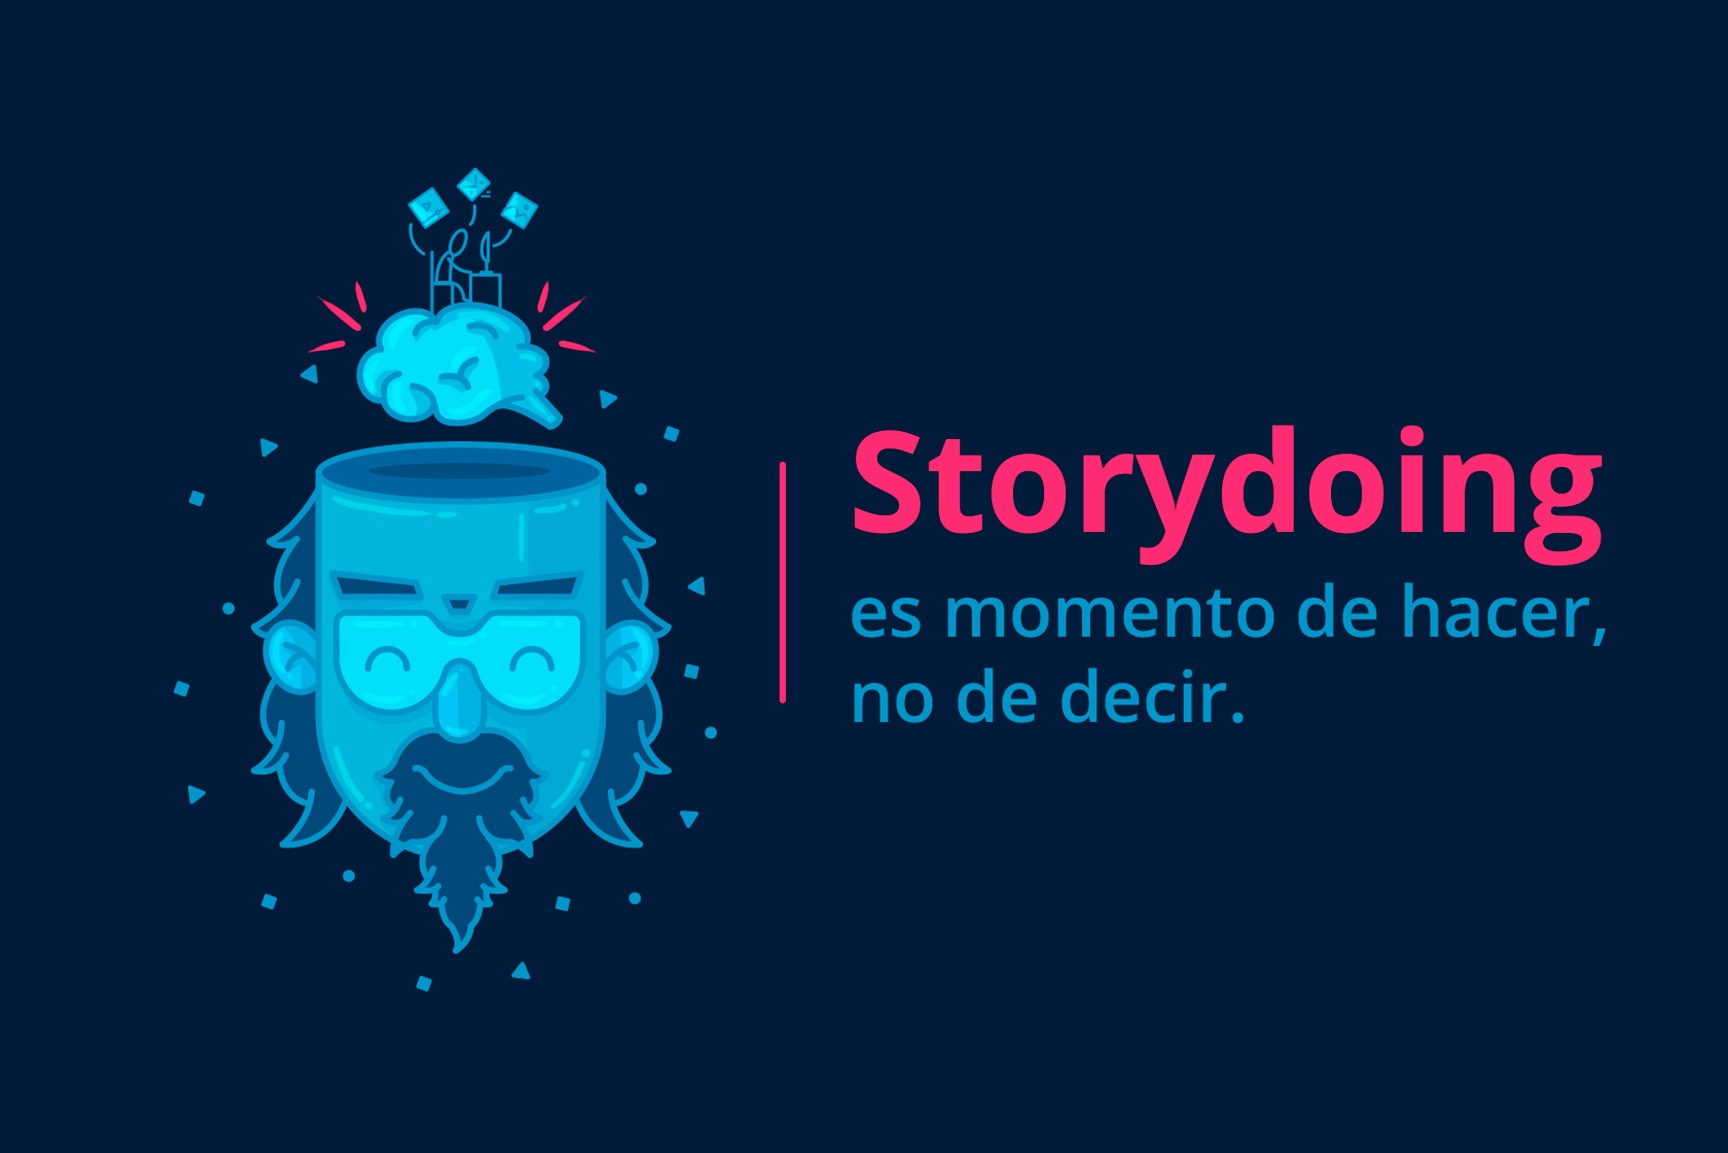 h_storydoing_es_momento_de_hacer_no_de_decor.jpg